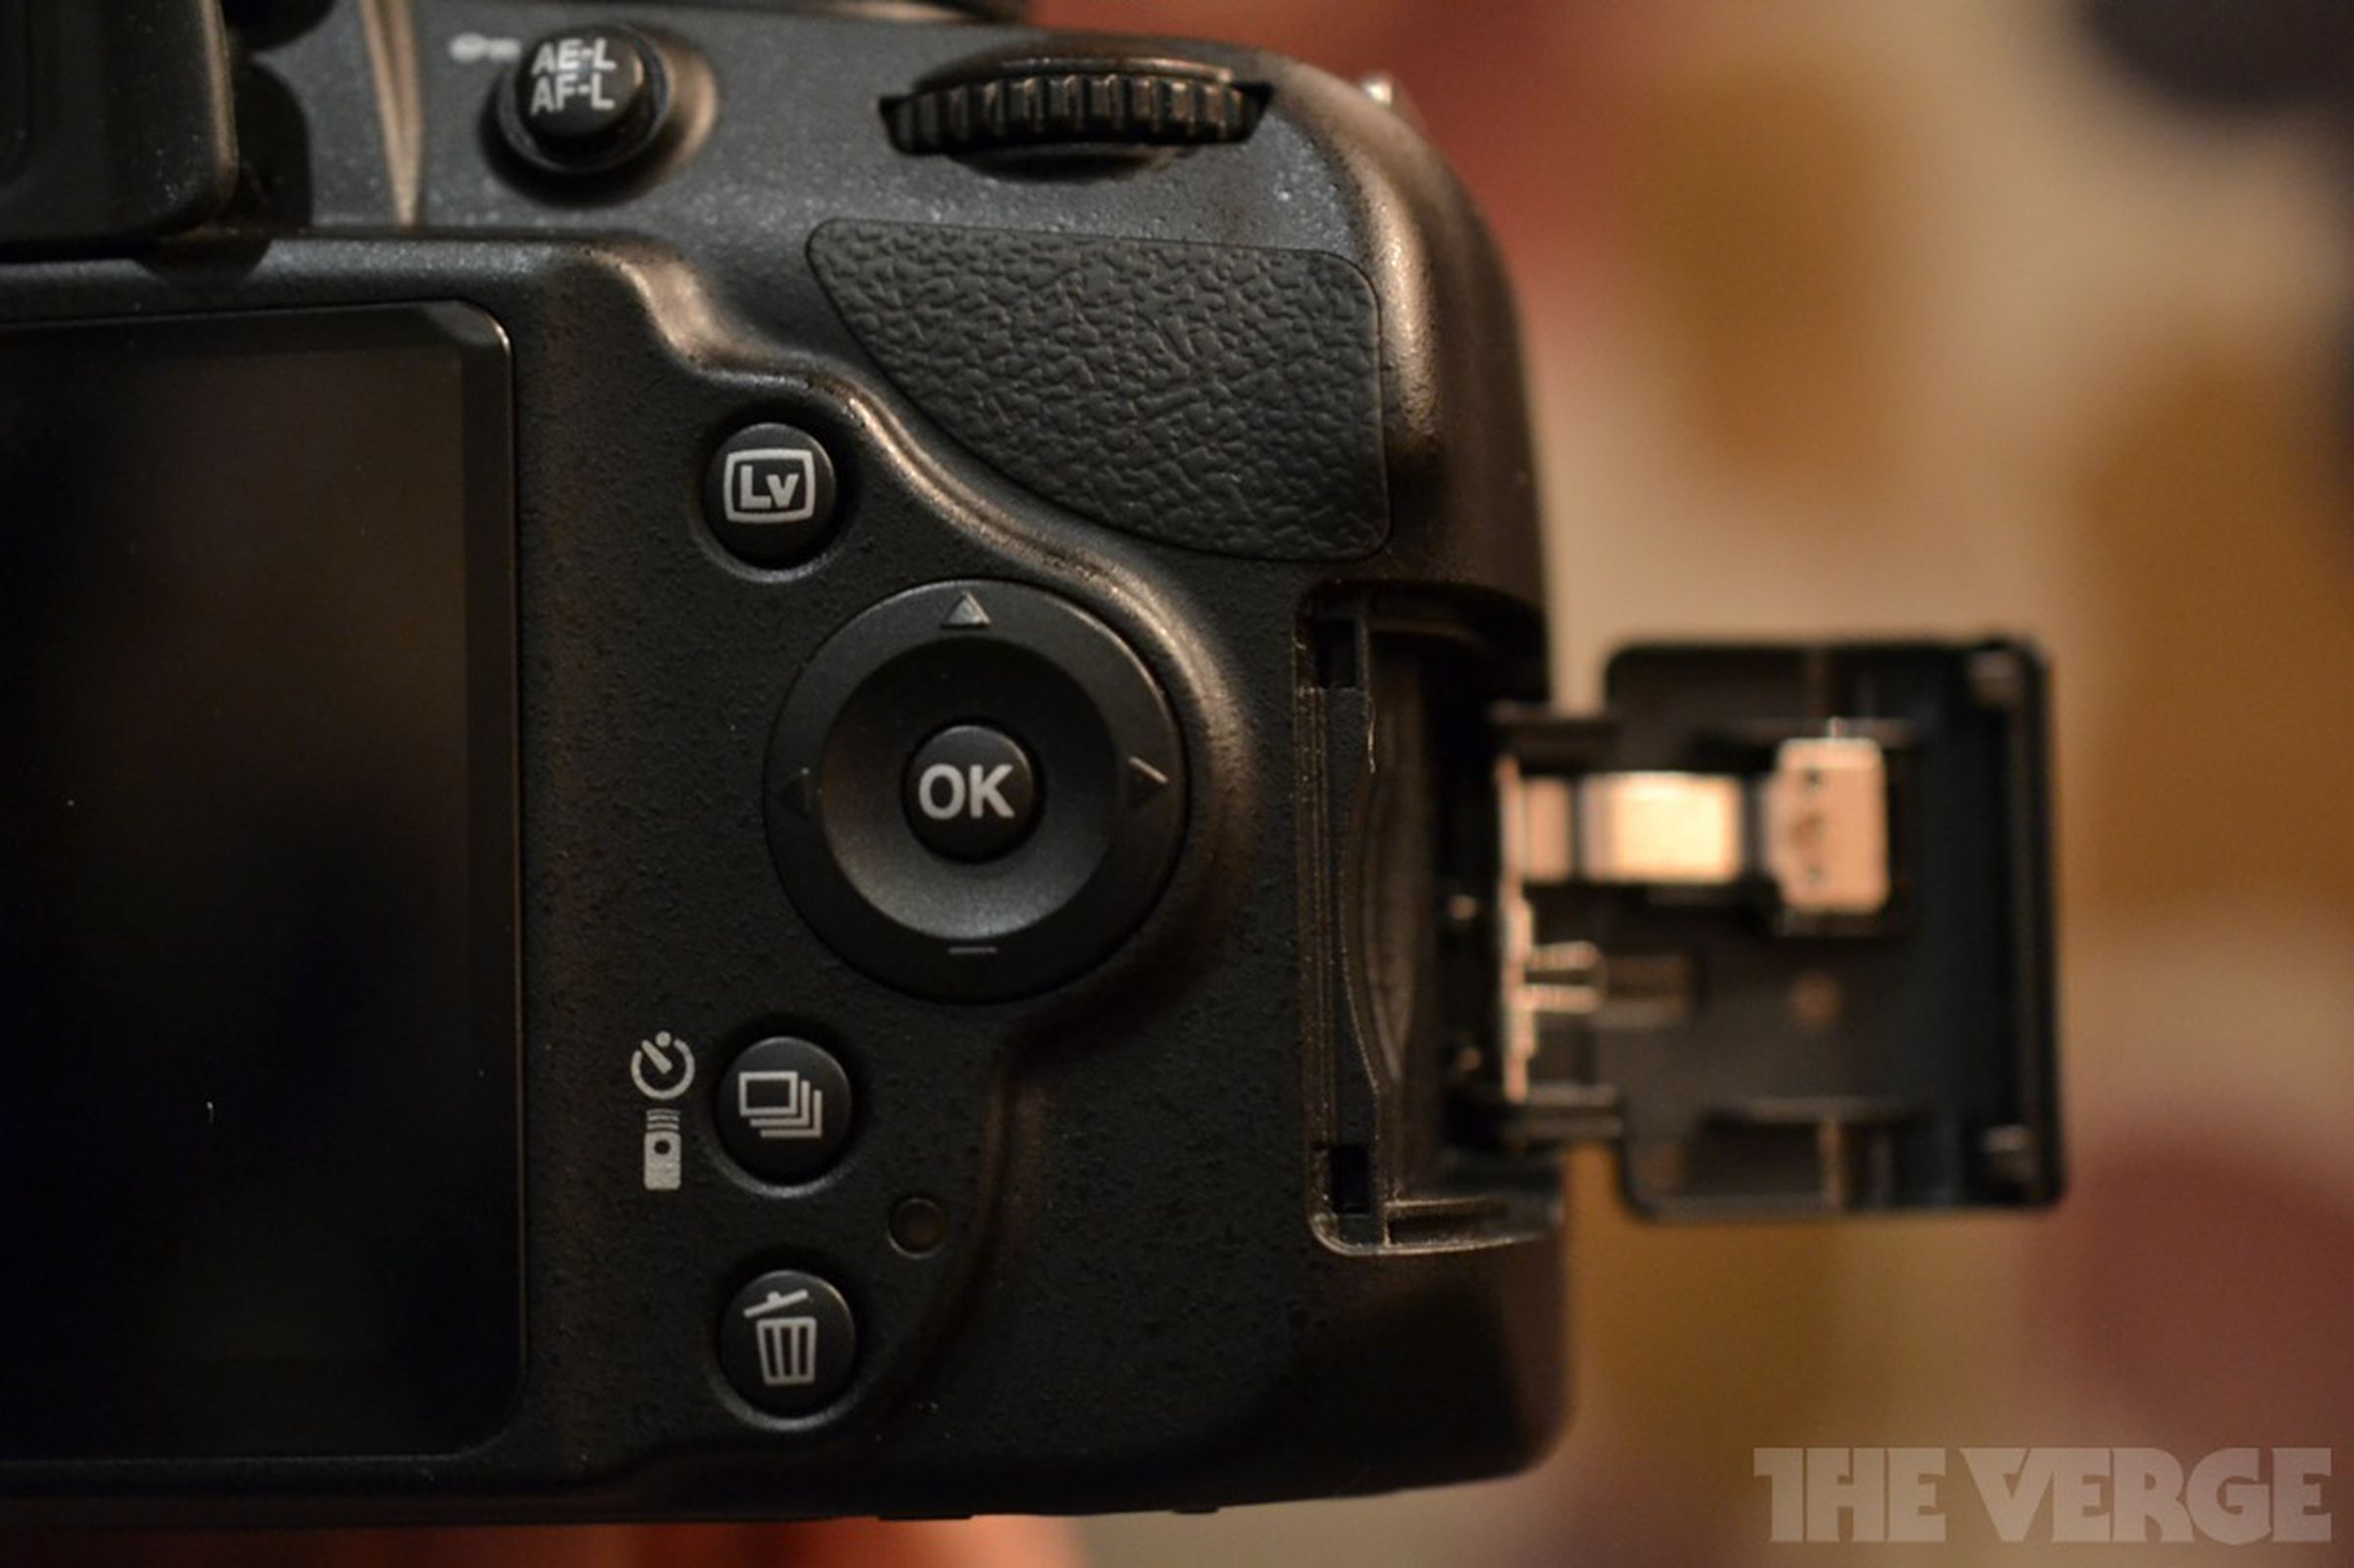 Nikon D3200 hands-on photos